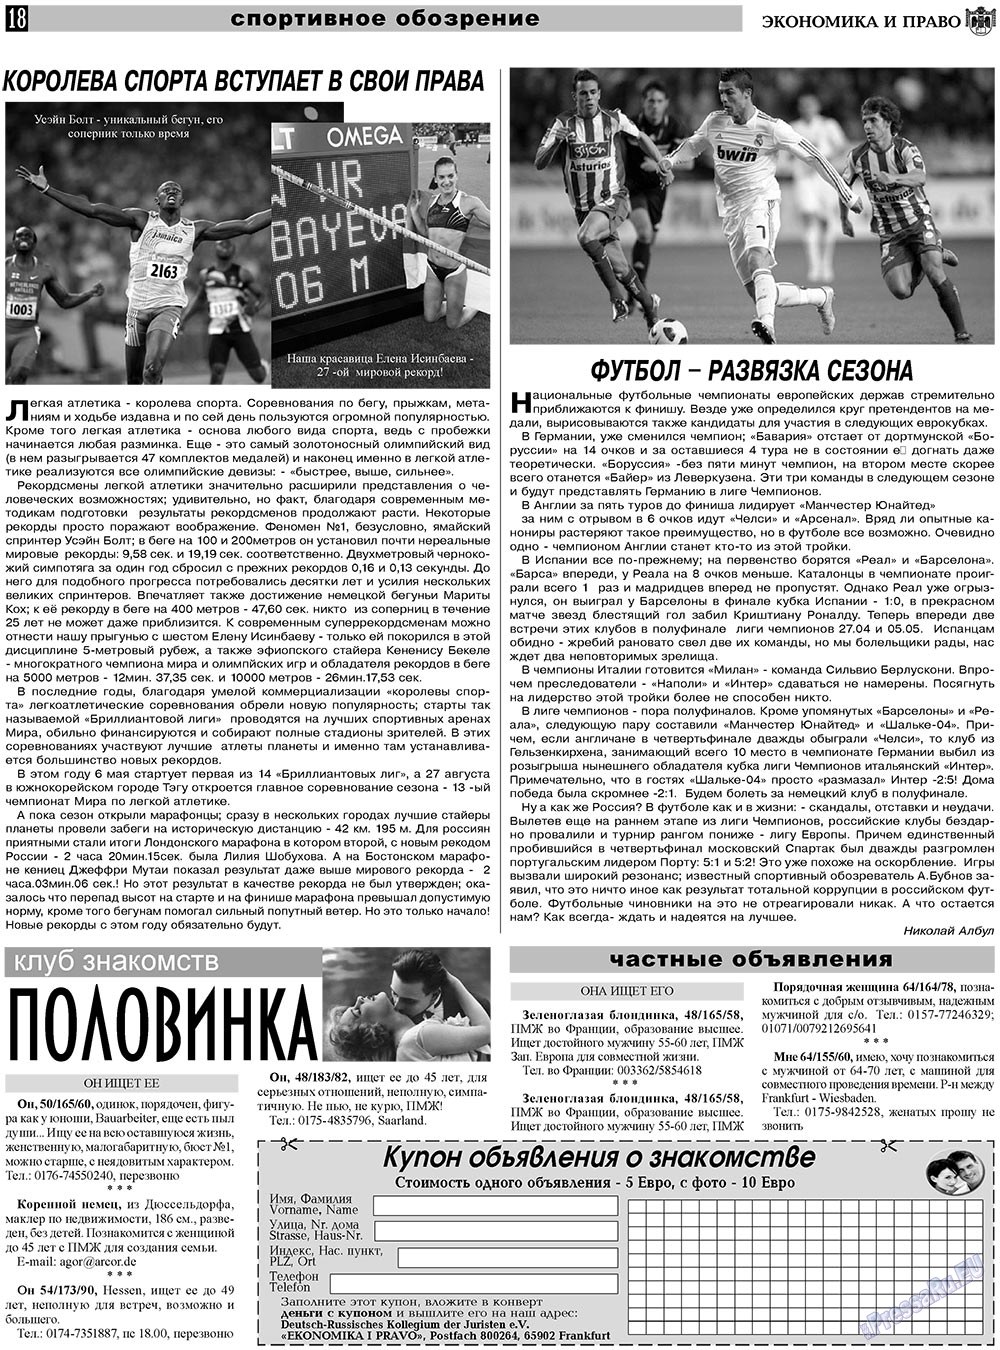 Экономика и право, газета. 2011 №5 стр.18